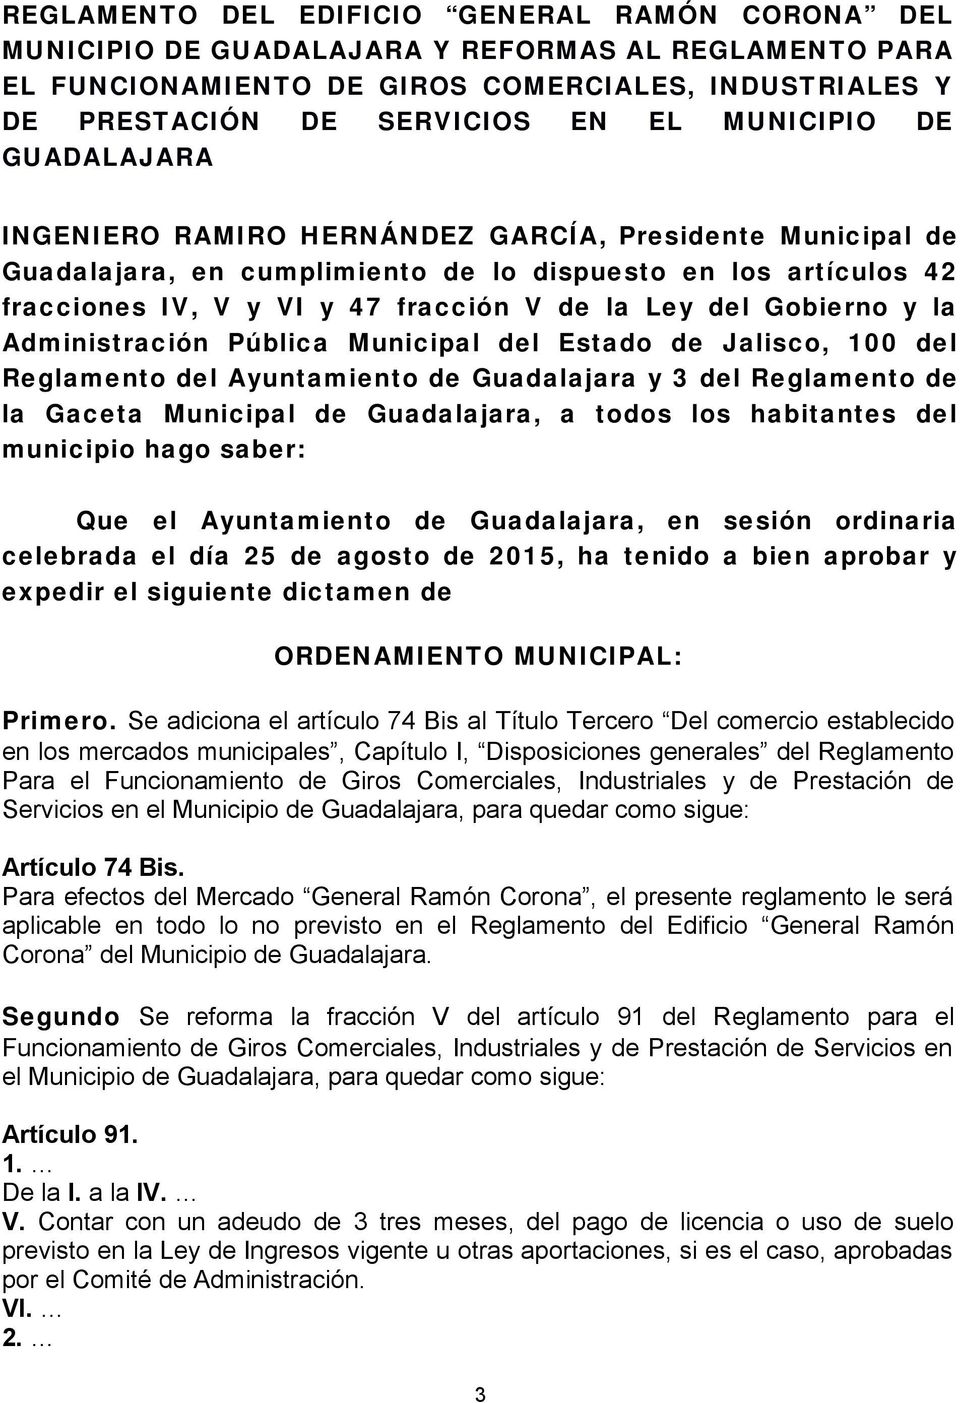 del Gobierno y la Administración Pública Municipal del Estado de Jalisco, 100 del Reglamento del Ayuntamiento de Guadalajara y 3 del Reglamento de la Gaceta Municipal de Guadalajara, a todos los